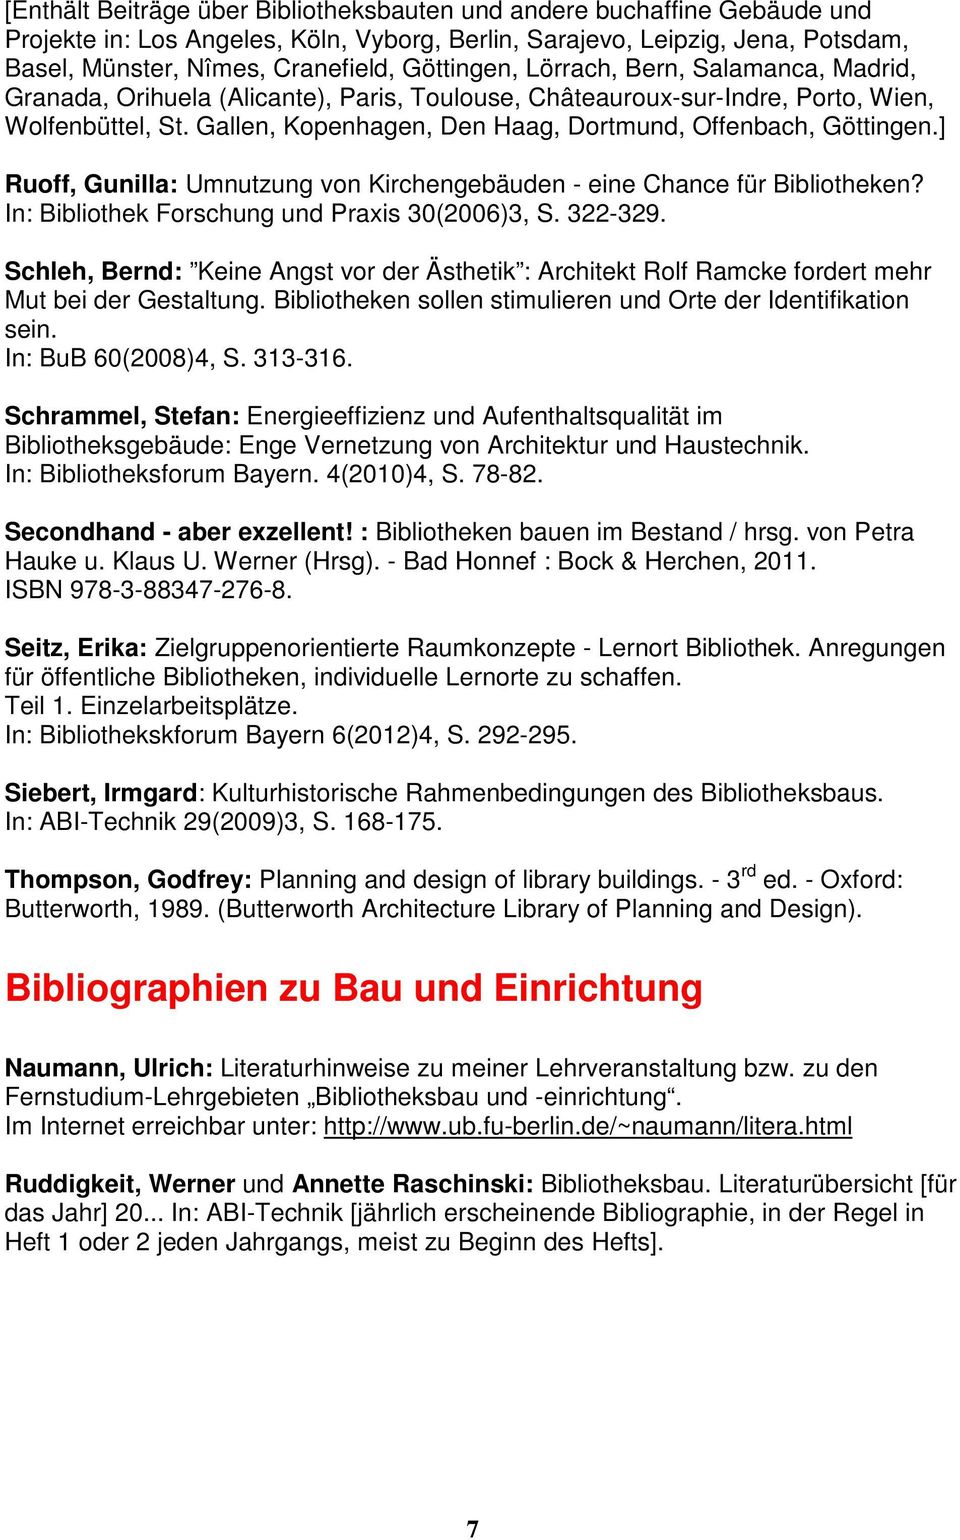 Gallen, Kopenhagen, Den Haag, Dortmund, Offenbach, Göttingen.] Ruoff, Gunilla: Umnutzung von Kirchengebäuden - eine Chance für Bibliotheken? In: Bibliothek Forschung und Praxis 30(2006)3, S. 322-329.